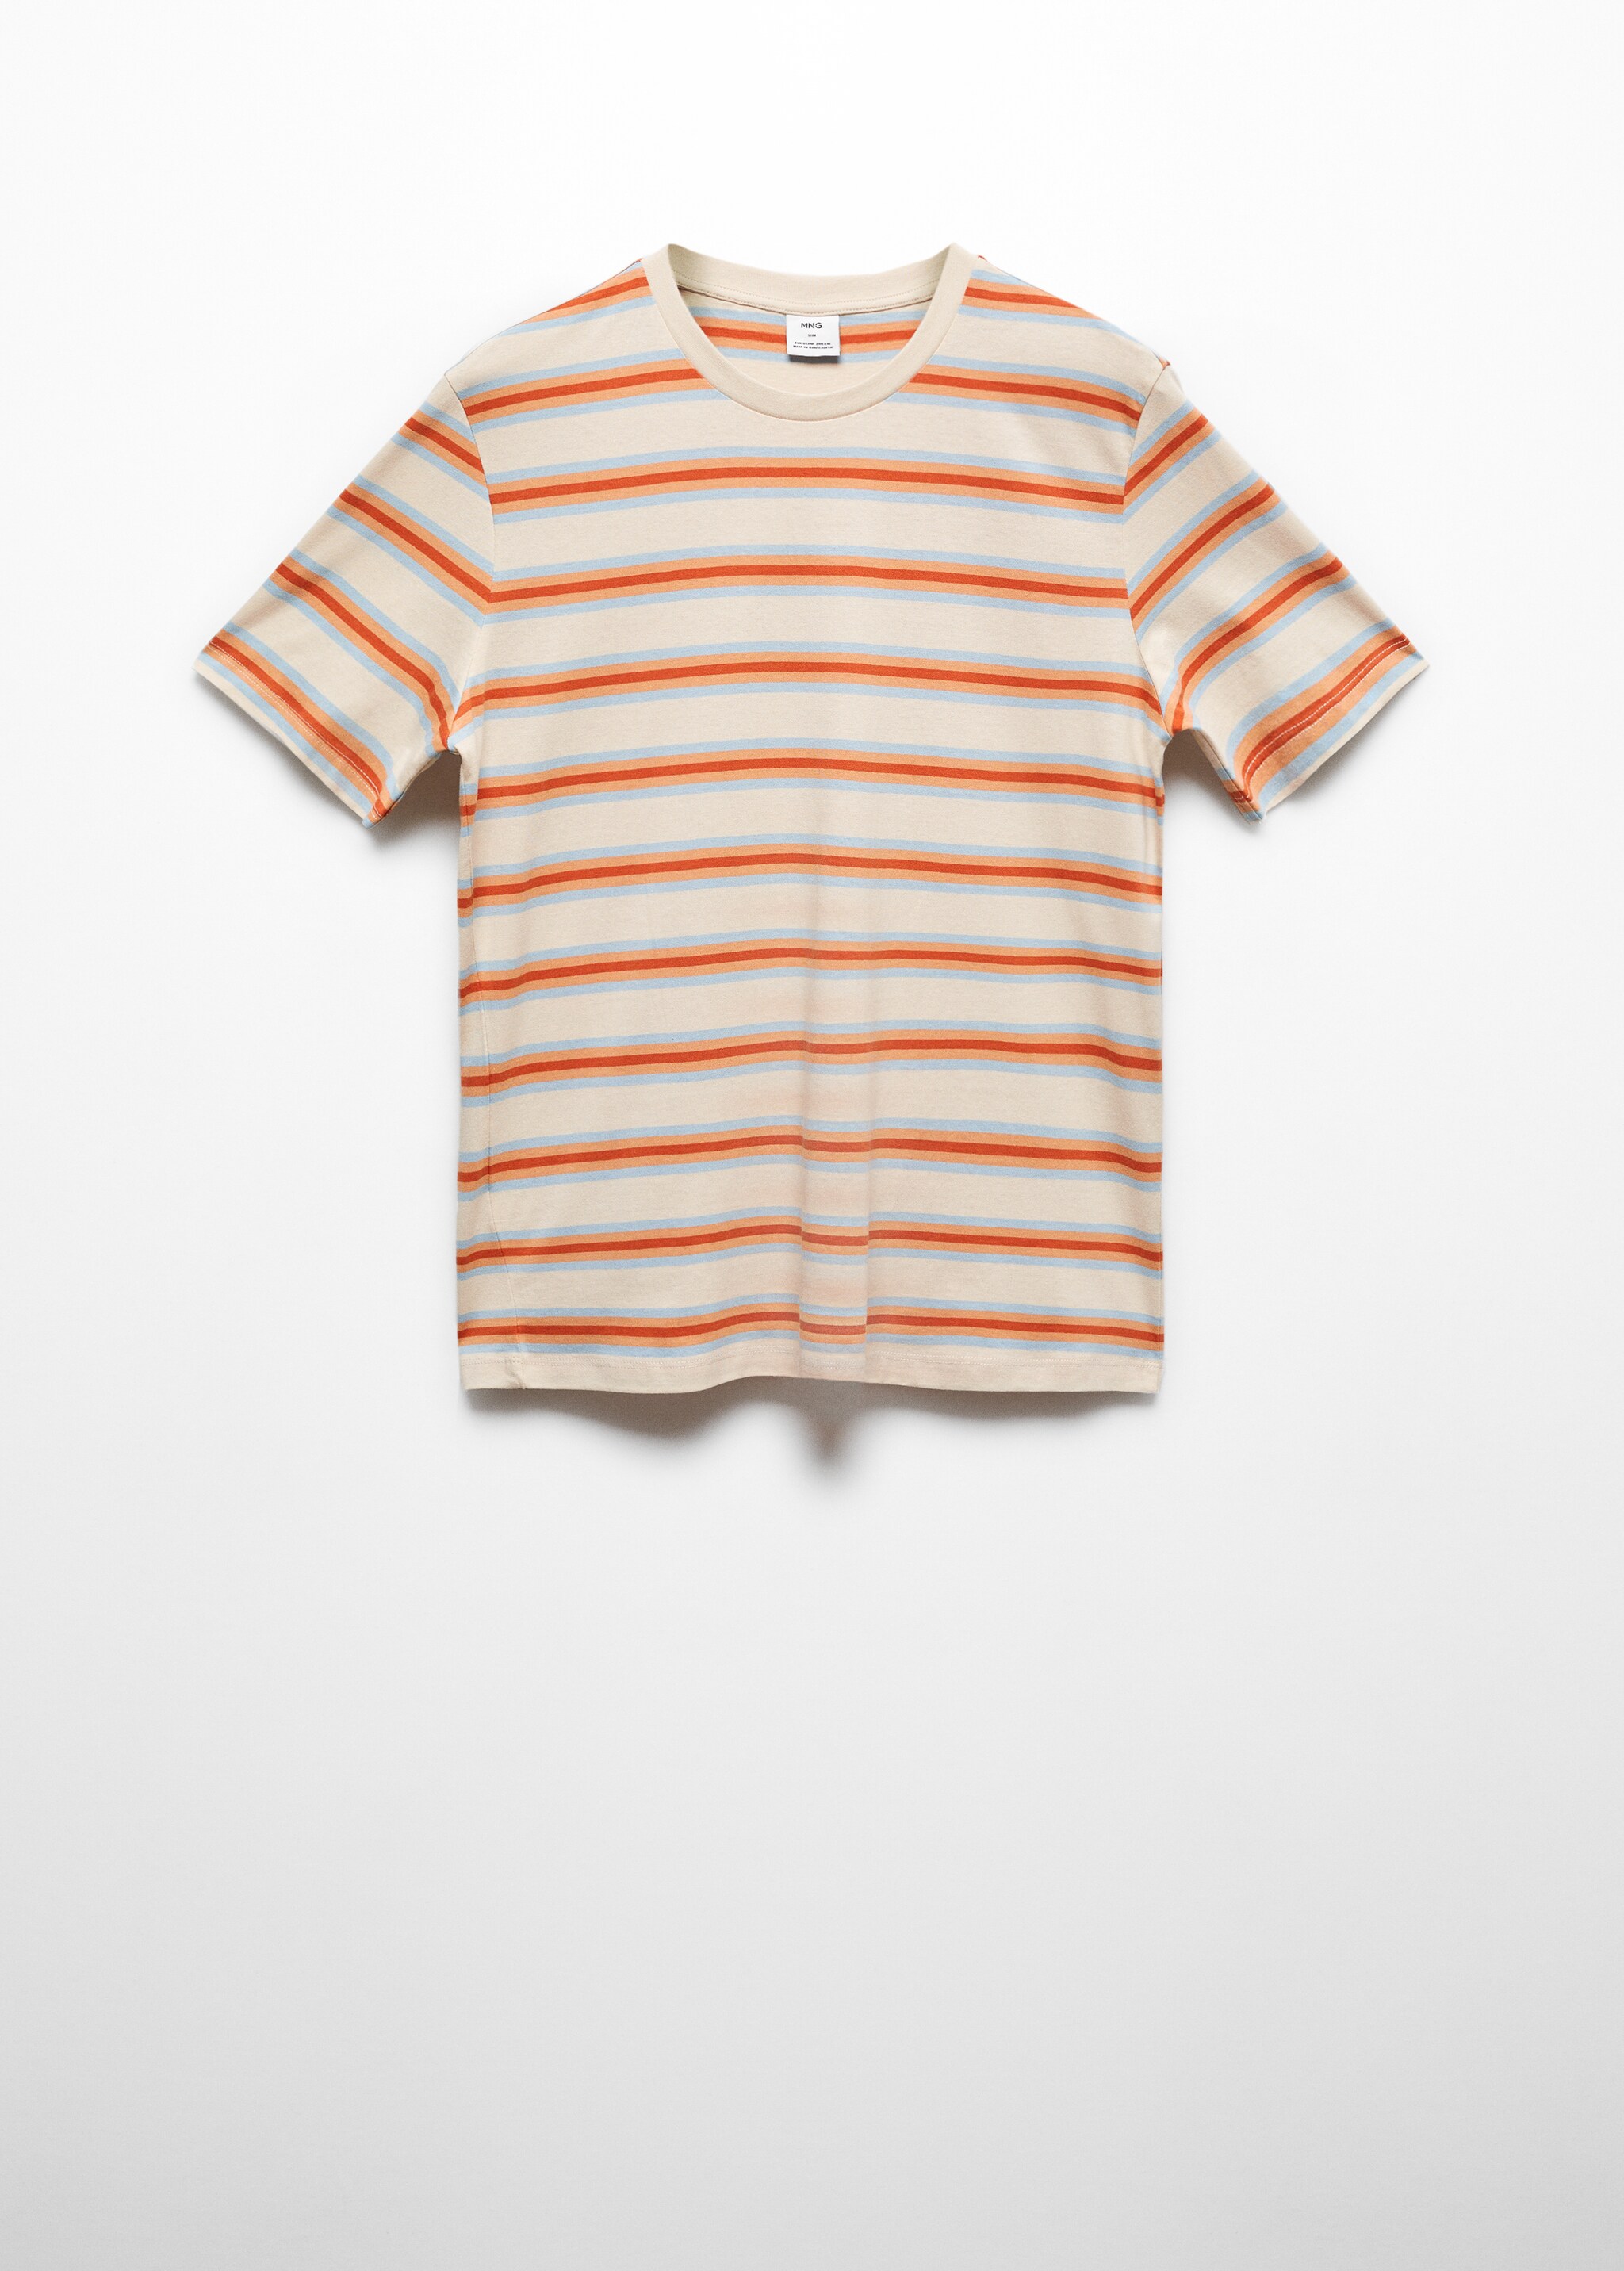 Camiseta 100% algodón rayas - Artículo sin modelo